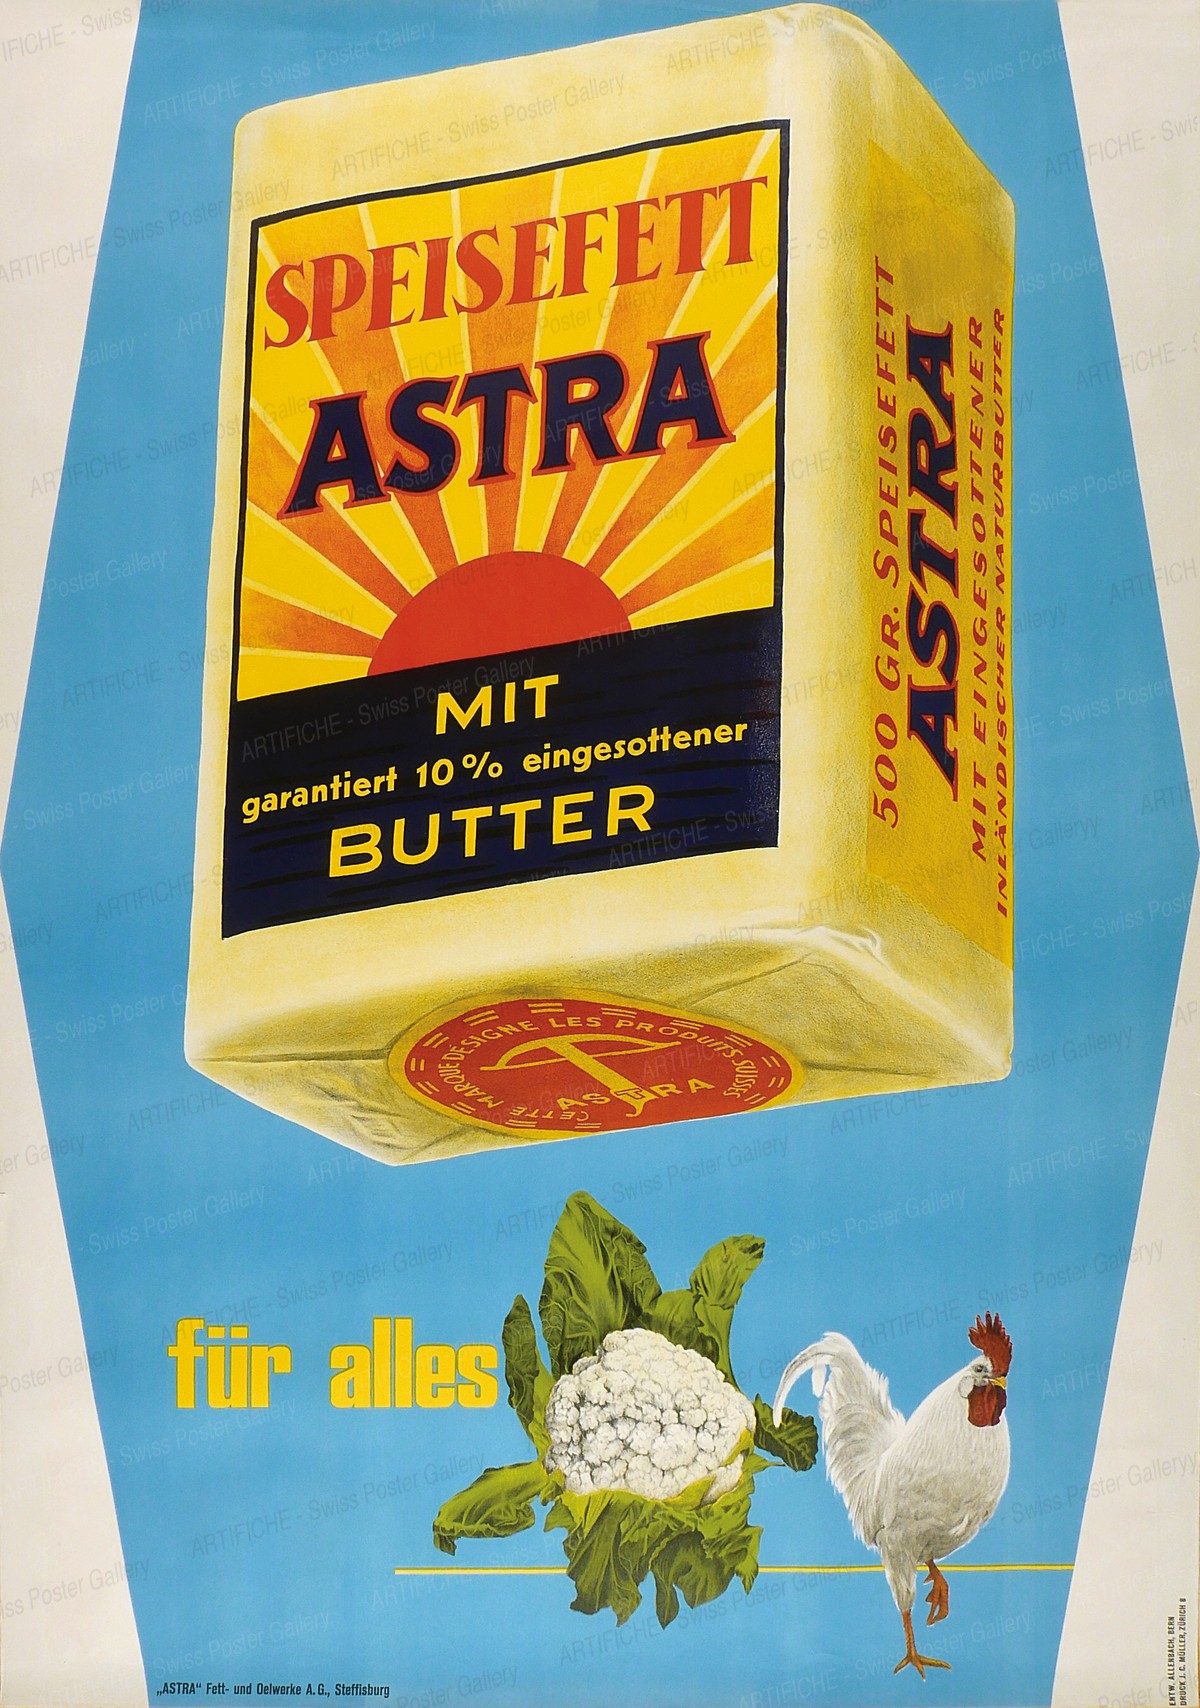 Astra Speisefett, Werner Allenbach